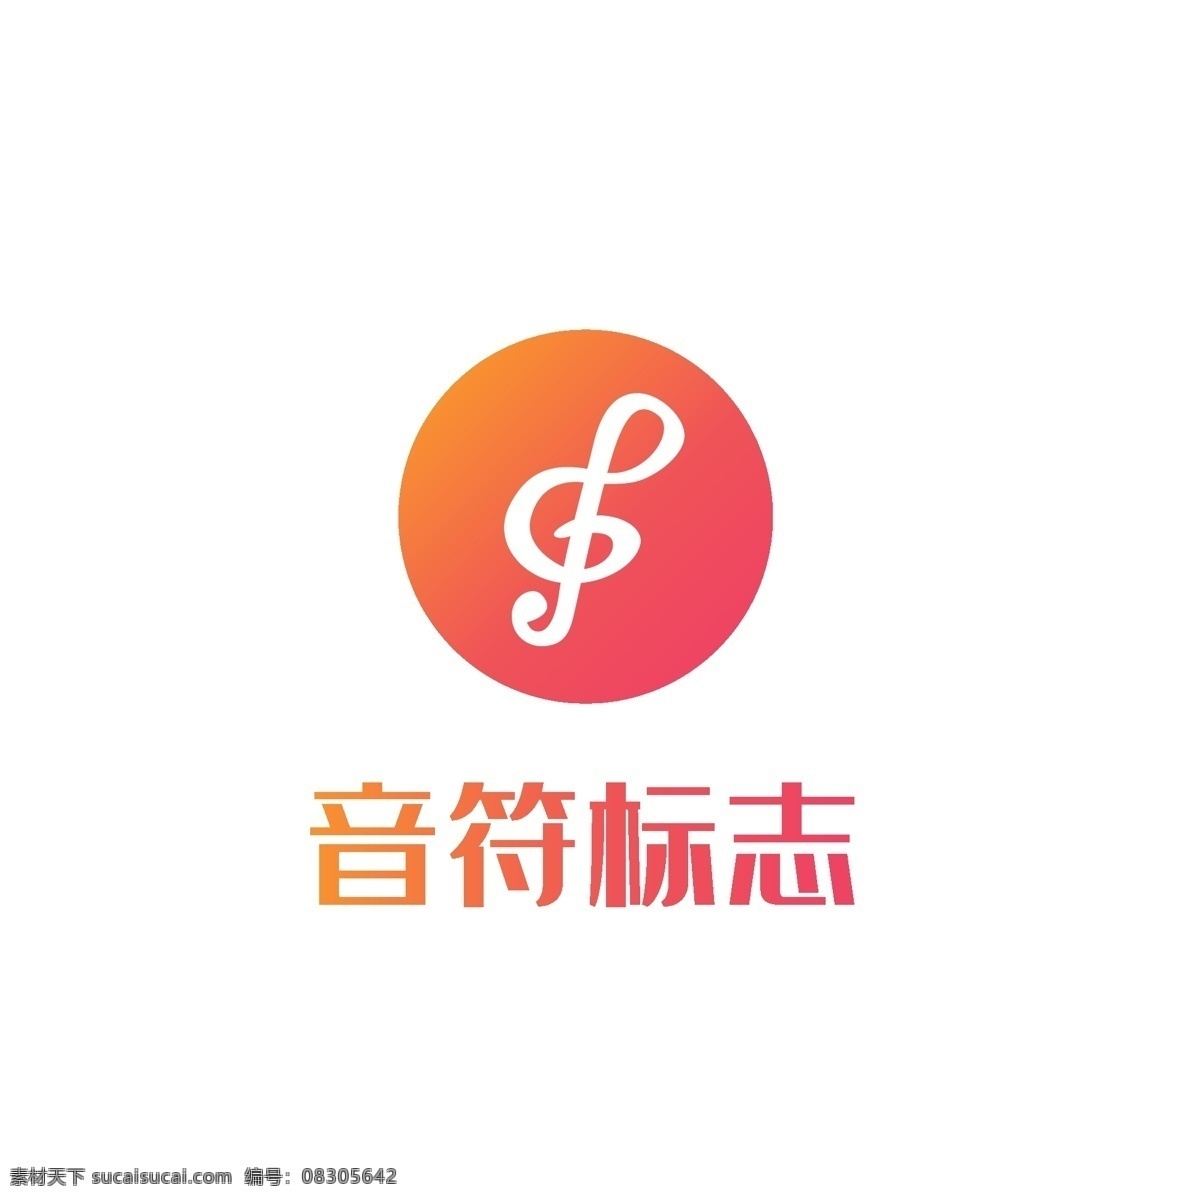 音符 标志 logo 科技 现代 标志logo 企业logo 商业logo 科技logo 金融 音乐logo logo设计